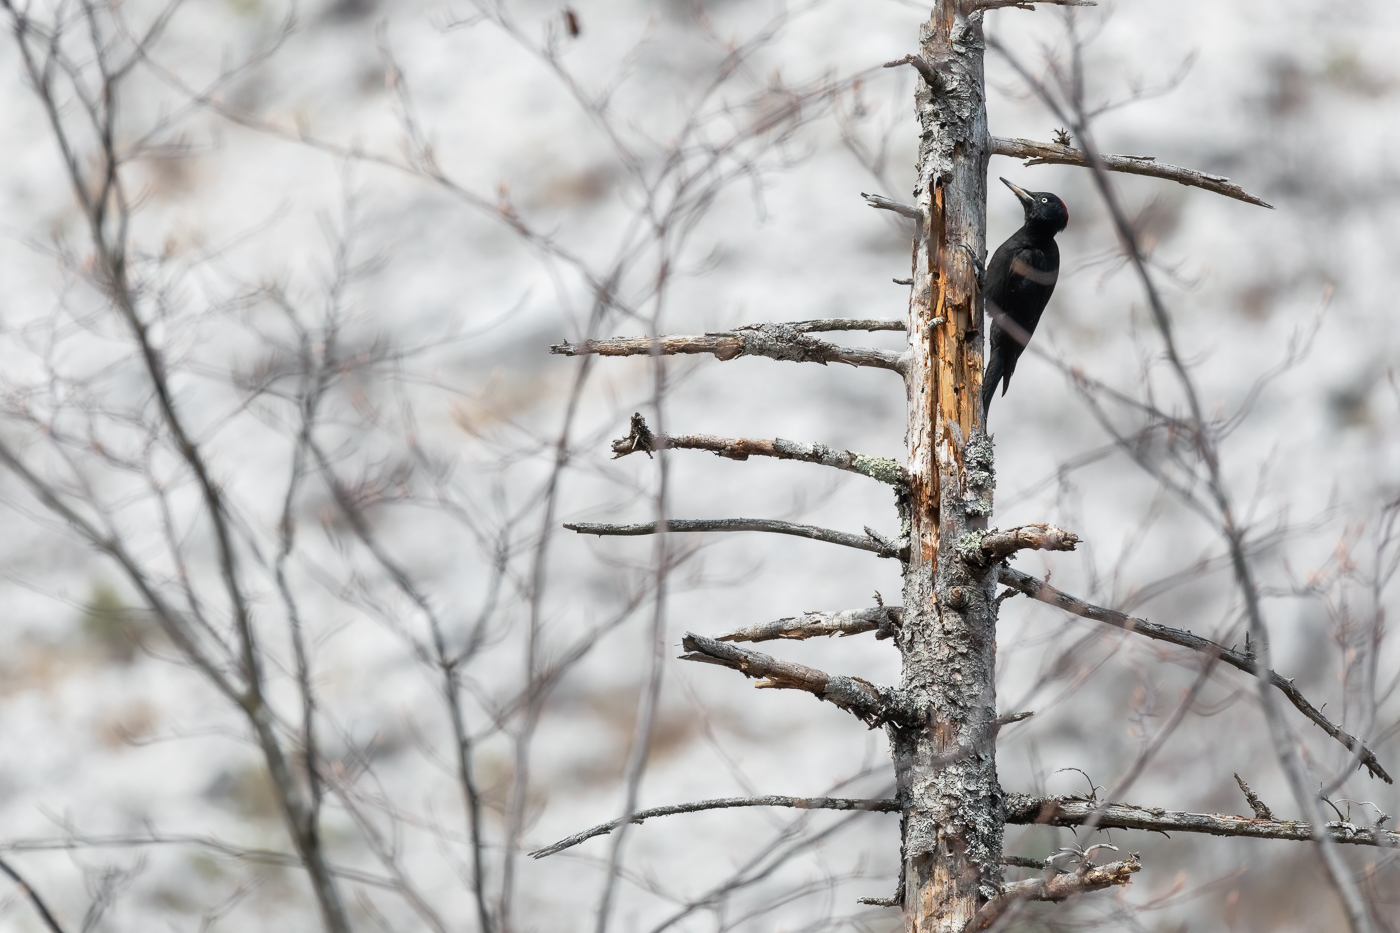 Una femmina di picchio nero (Dryocopus martius) è al lavoro su ciò che resta di vecchi alberi morti. Parco Naturale Dolomiti Friulane, Italia.